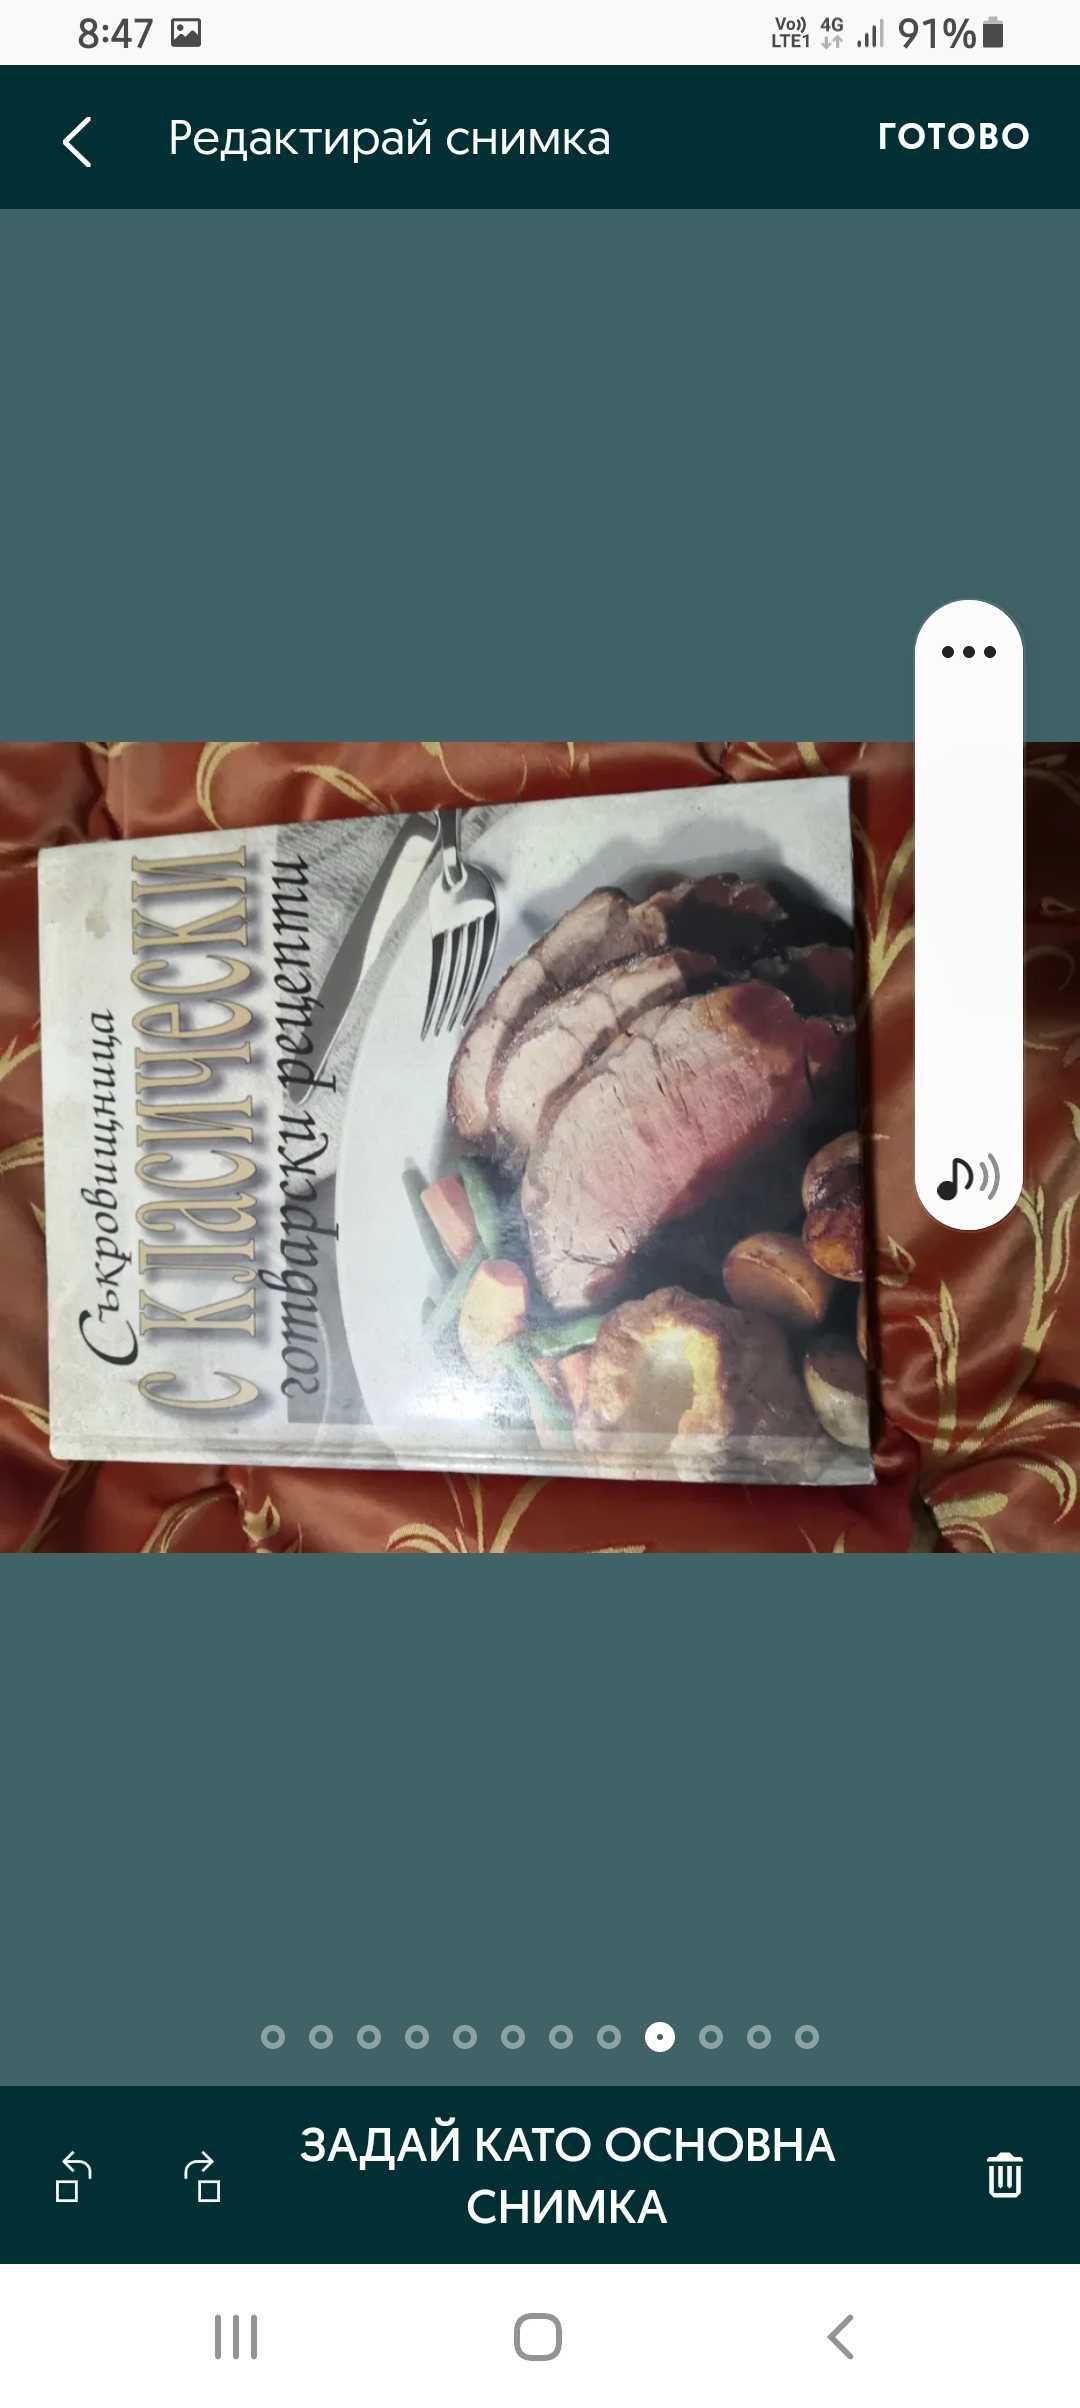 П кулинарна книга 15лв